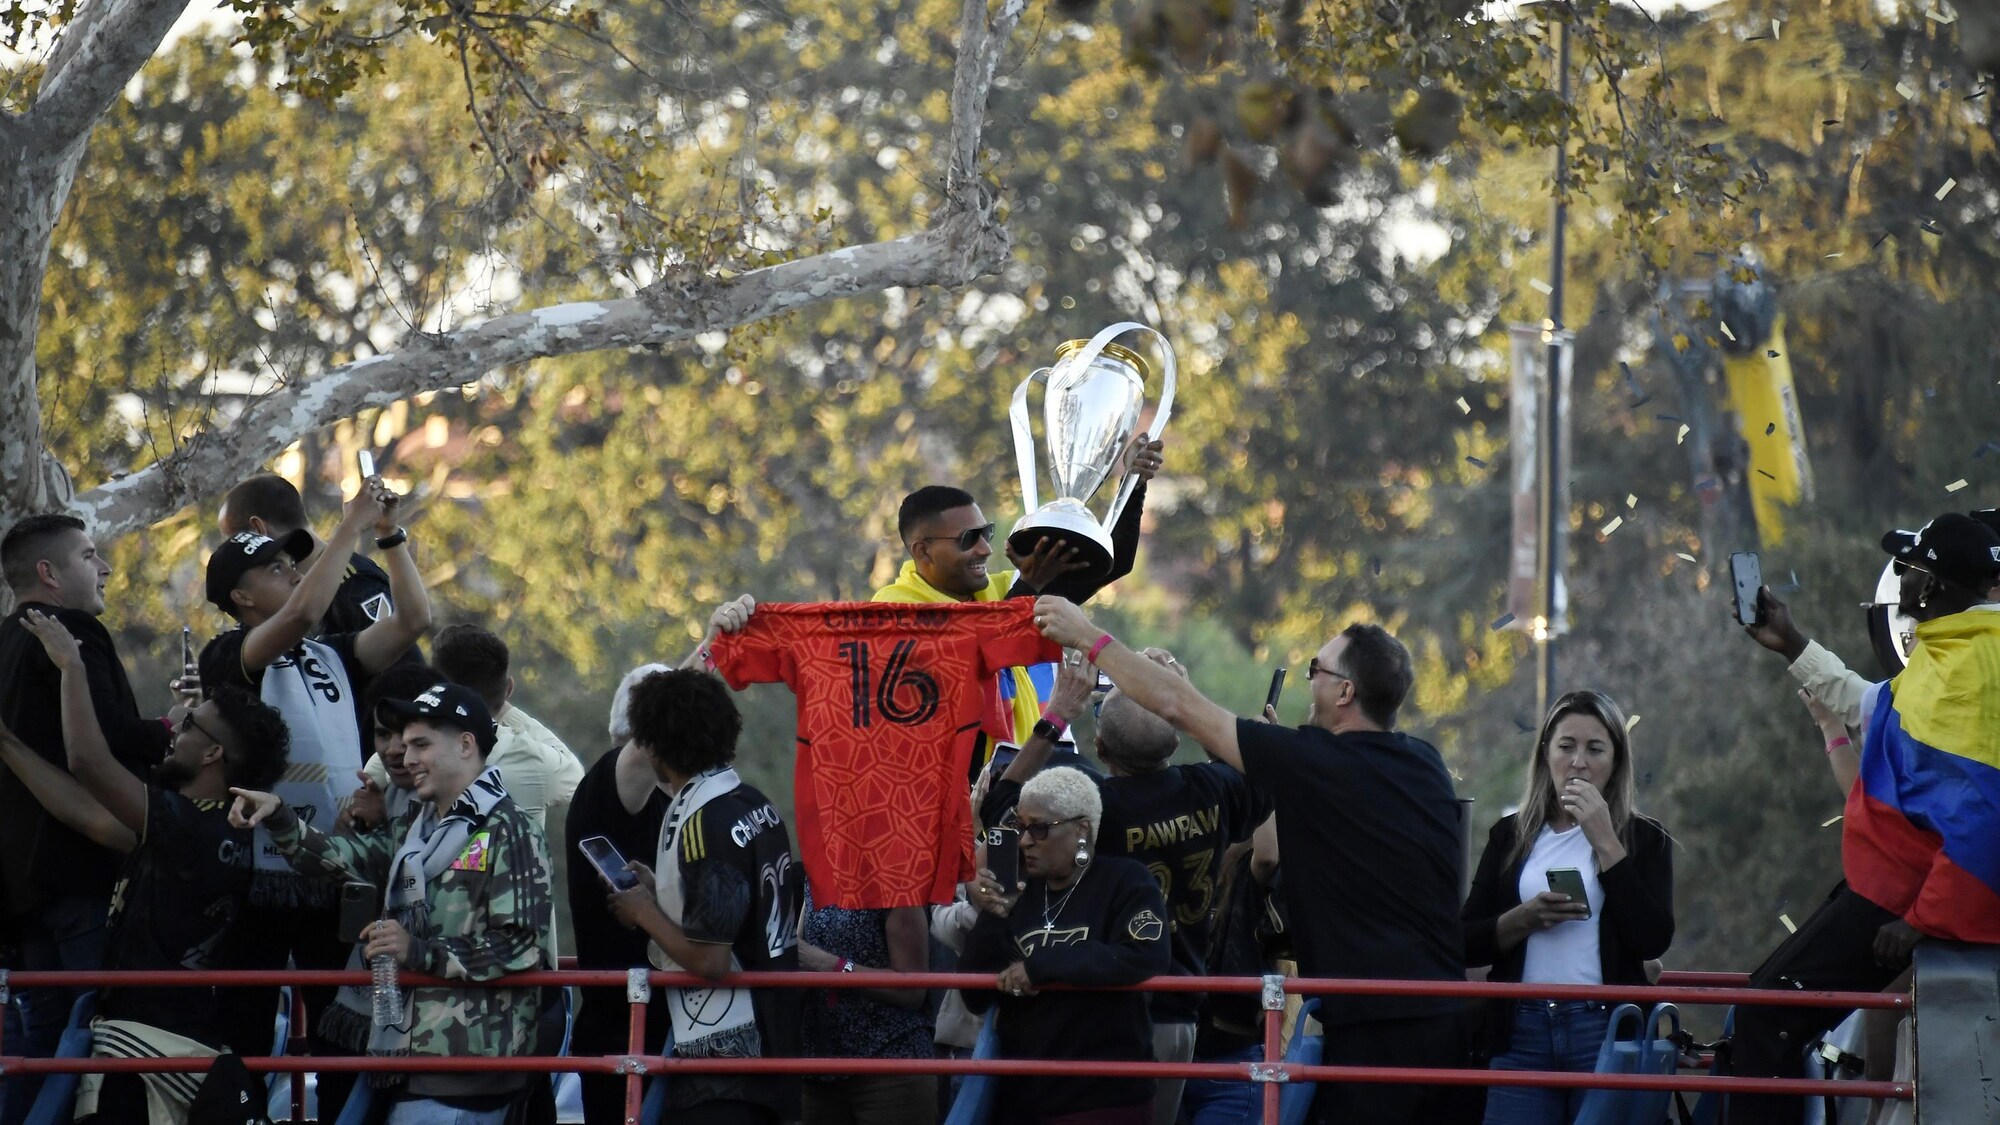 Une équipe championne sur le le toit d'un autobus. Un joueur tient le trophée, près duquel on voit un chandail rouge avec le no 16 de Maxime Crépeau